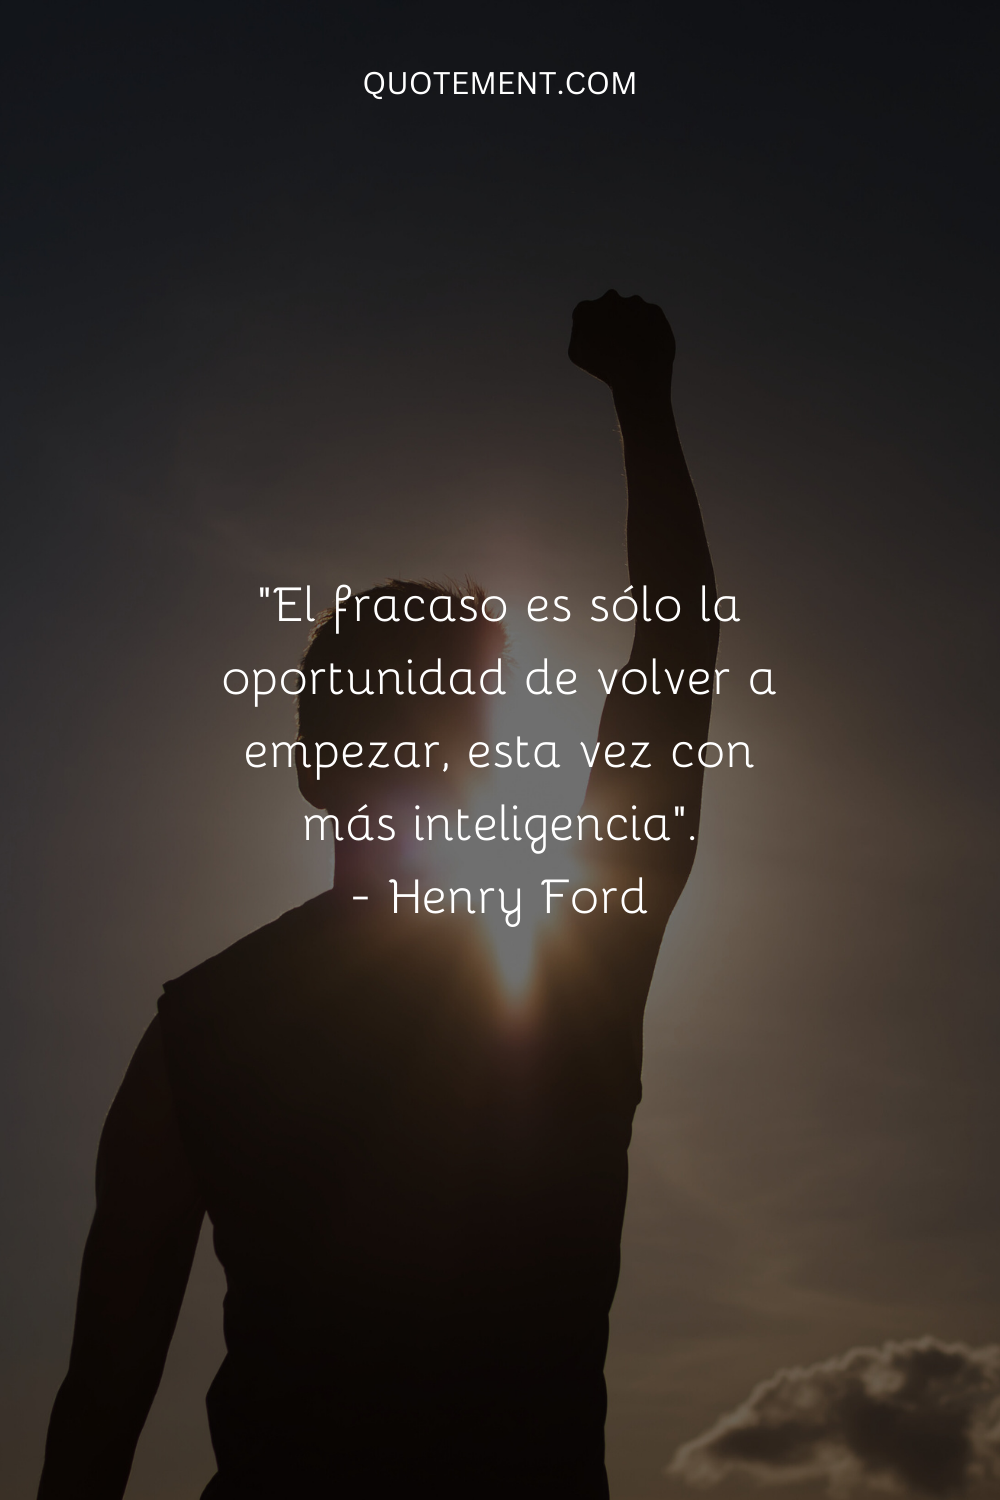 El fracaso no es más que la oportunidad de volver a empezar, esta vez de forma más inteligente. - Henry Ford